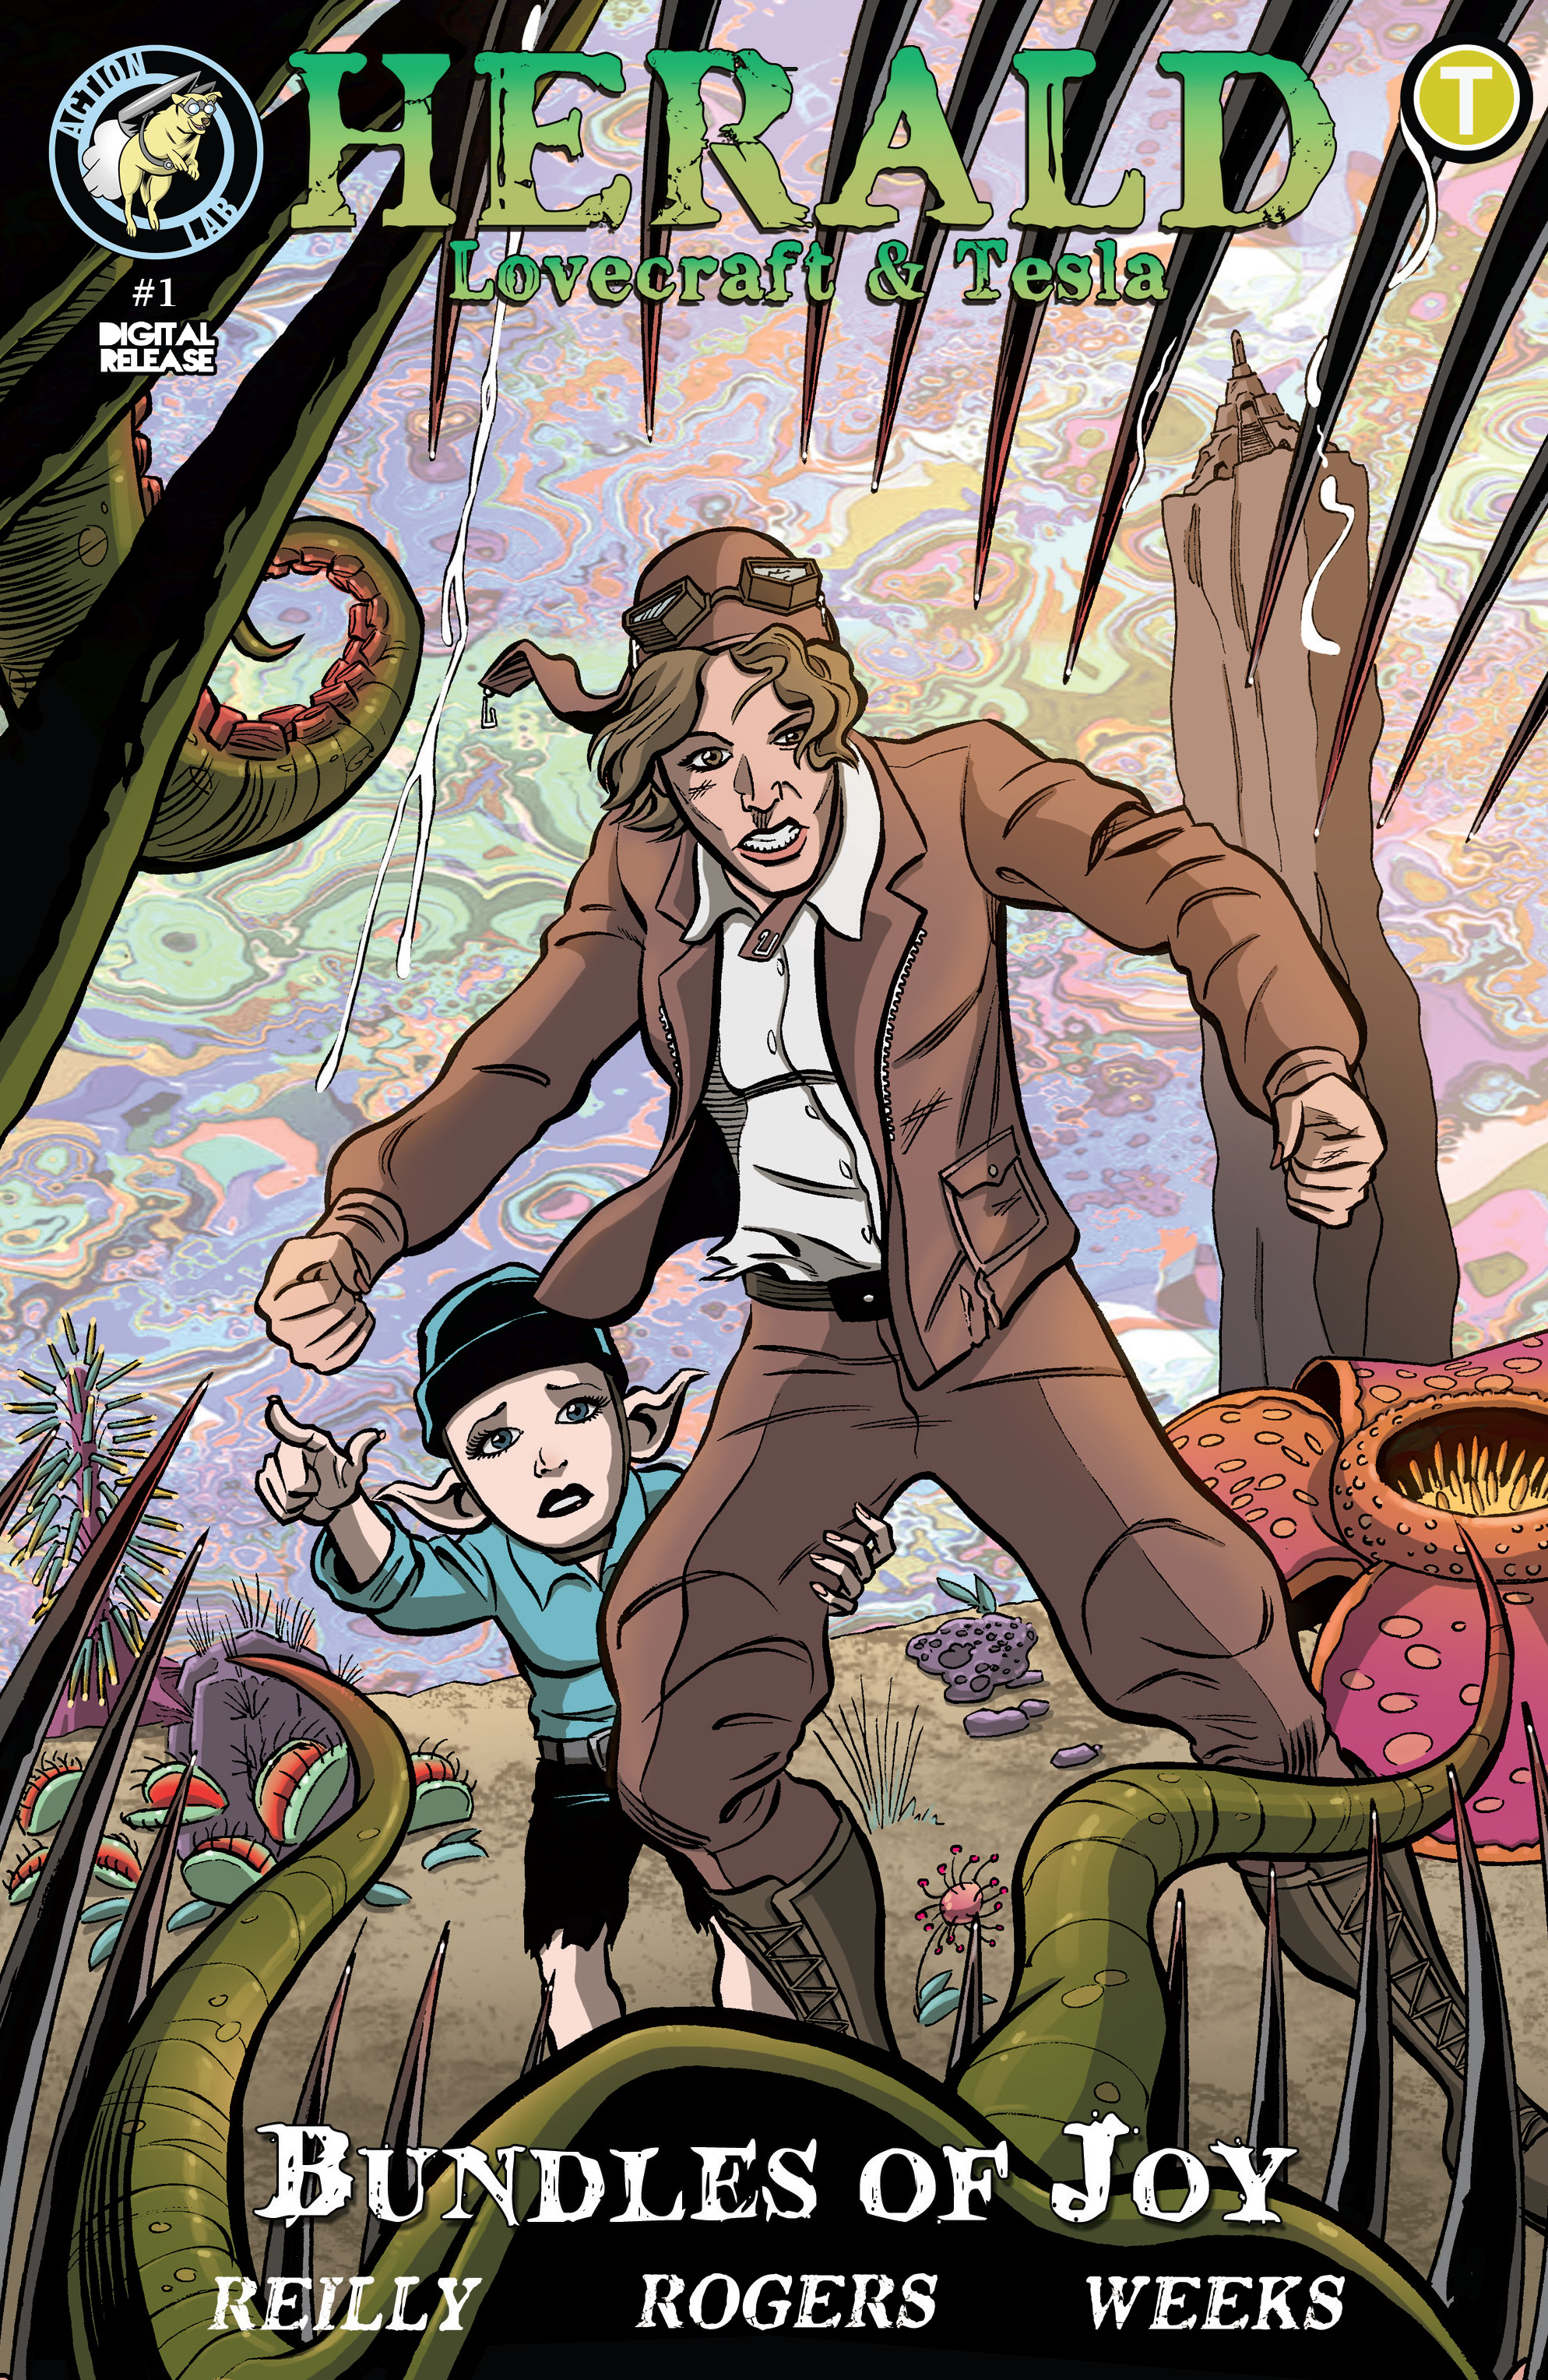 Read online Herald: Lovecraft & Tesla - Bundles of Joy comic -  Issue #1 - 1